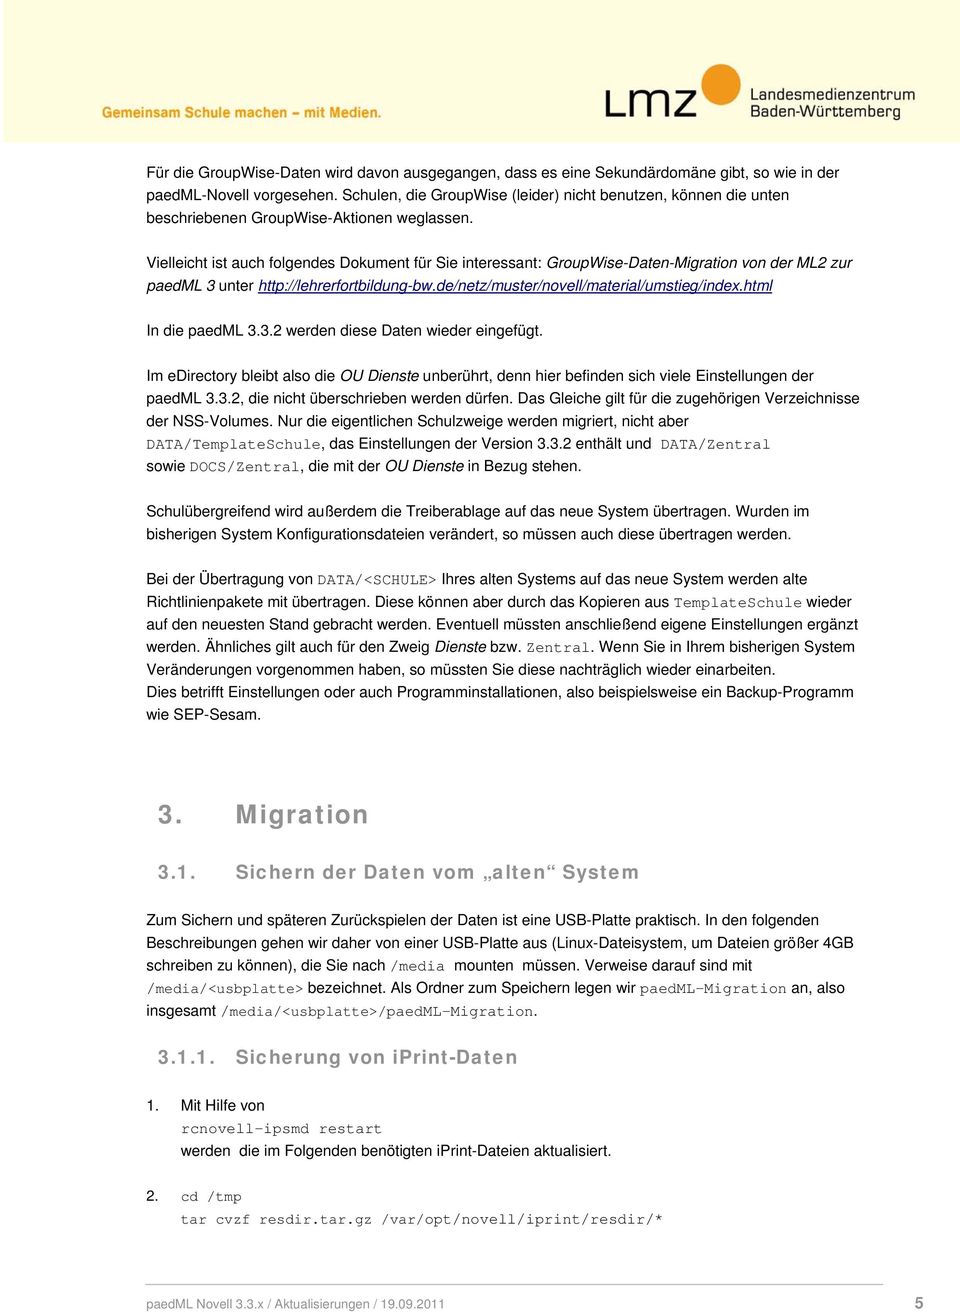 Vielleicht ist auch folgendes Dokument für Sie interessant: GroupWise-Daten-Migration von der ML2 zur paedml 3 unter http://lehrerfortbildung-bw.de/netz/muster/novell/material/umstieg/index.